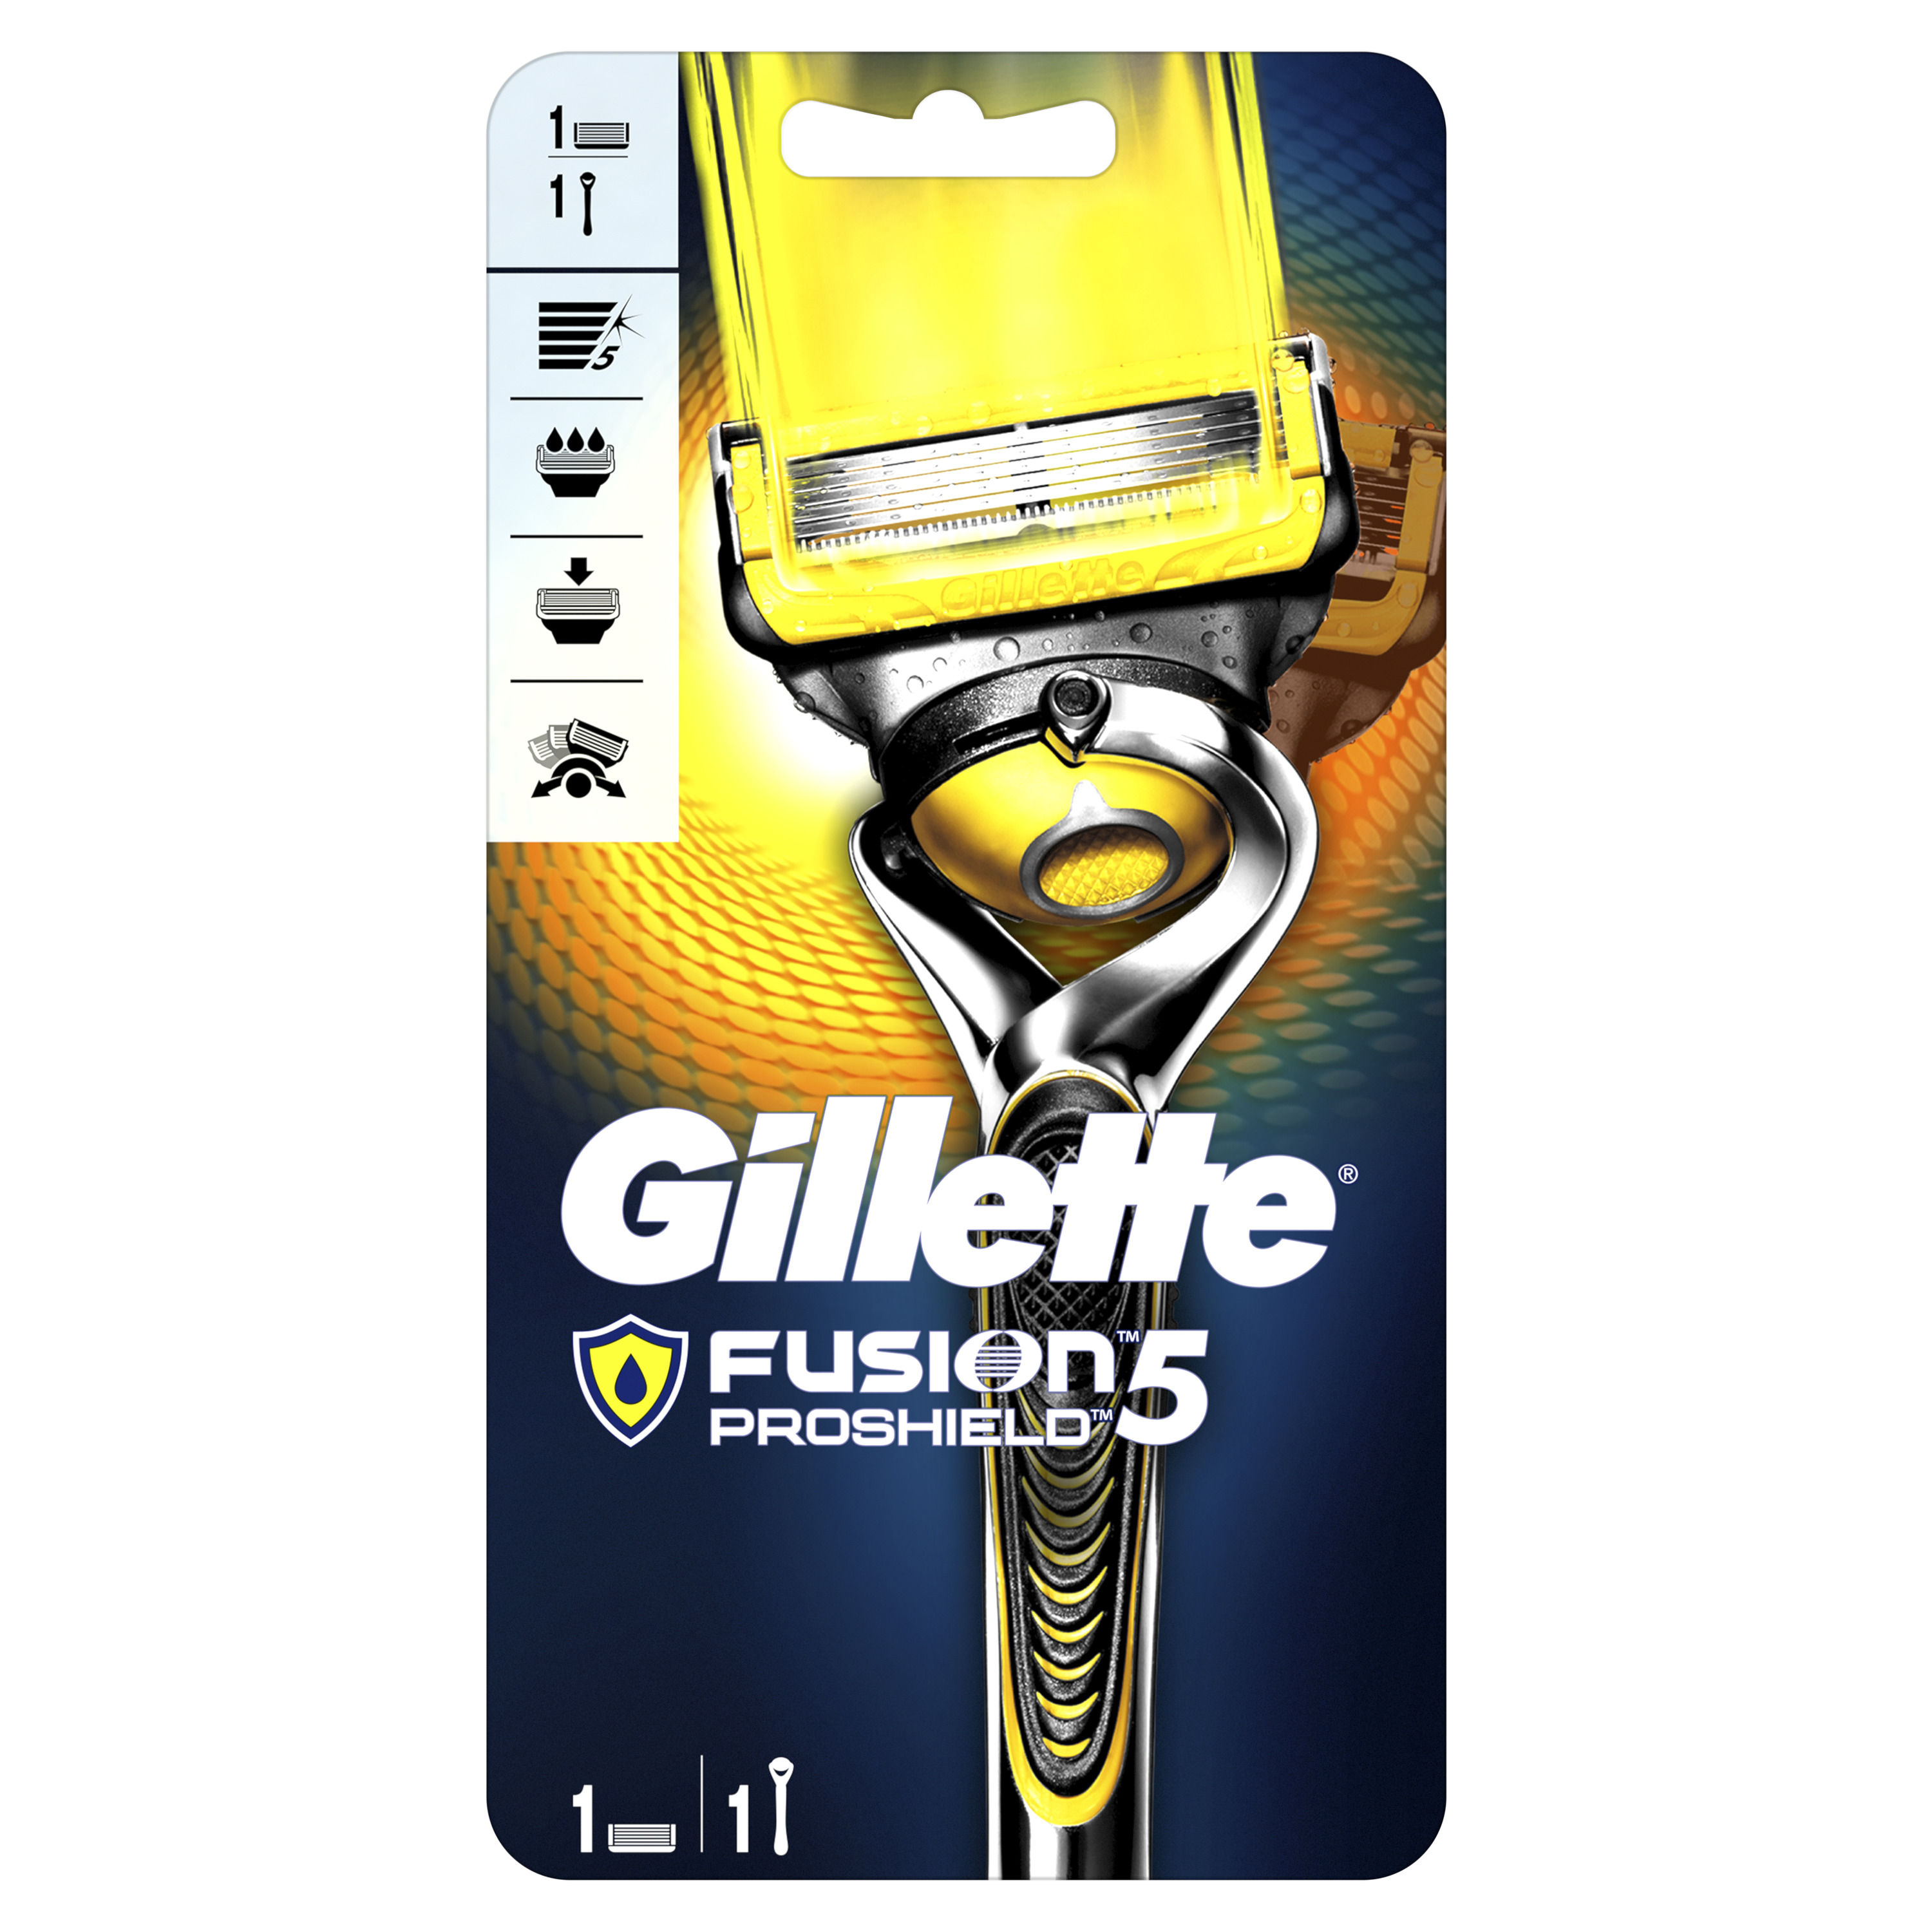 Мужская бритва Gillette Fusion5 ProShield с 1 сменной кассетой vox станок для бритья limited 3 лезвия с 1 сменной кассетой 1 0